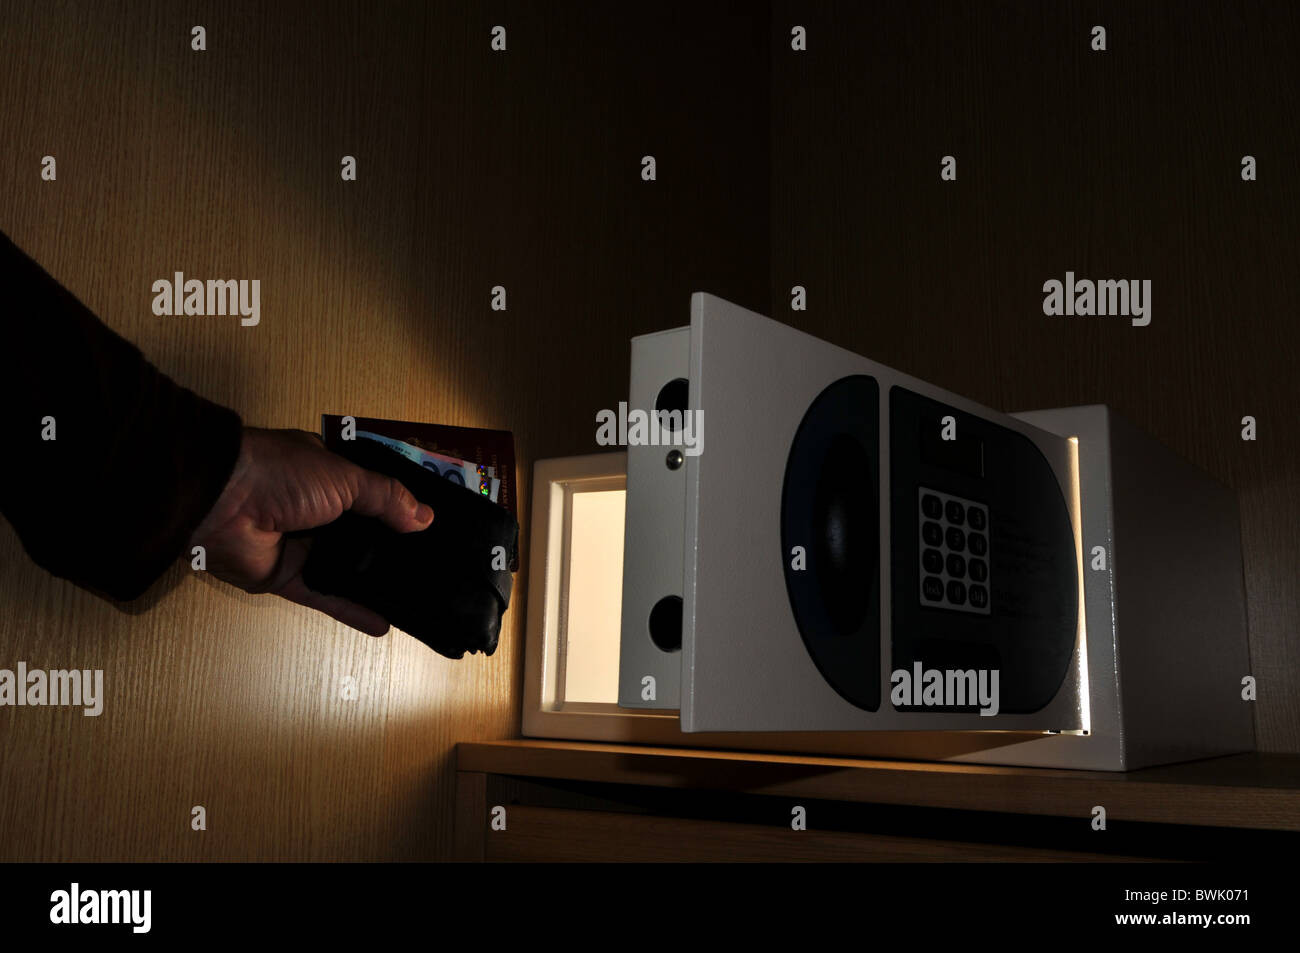 Seguro, caja fuerte del hotel, el hombre tomando sus pertenencias desde una caja de seguridad del hotel Foto de stock